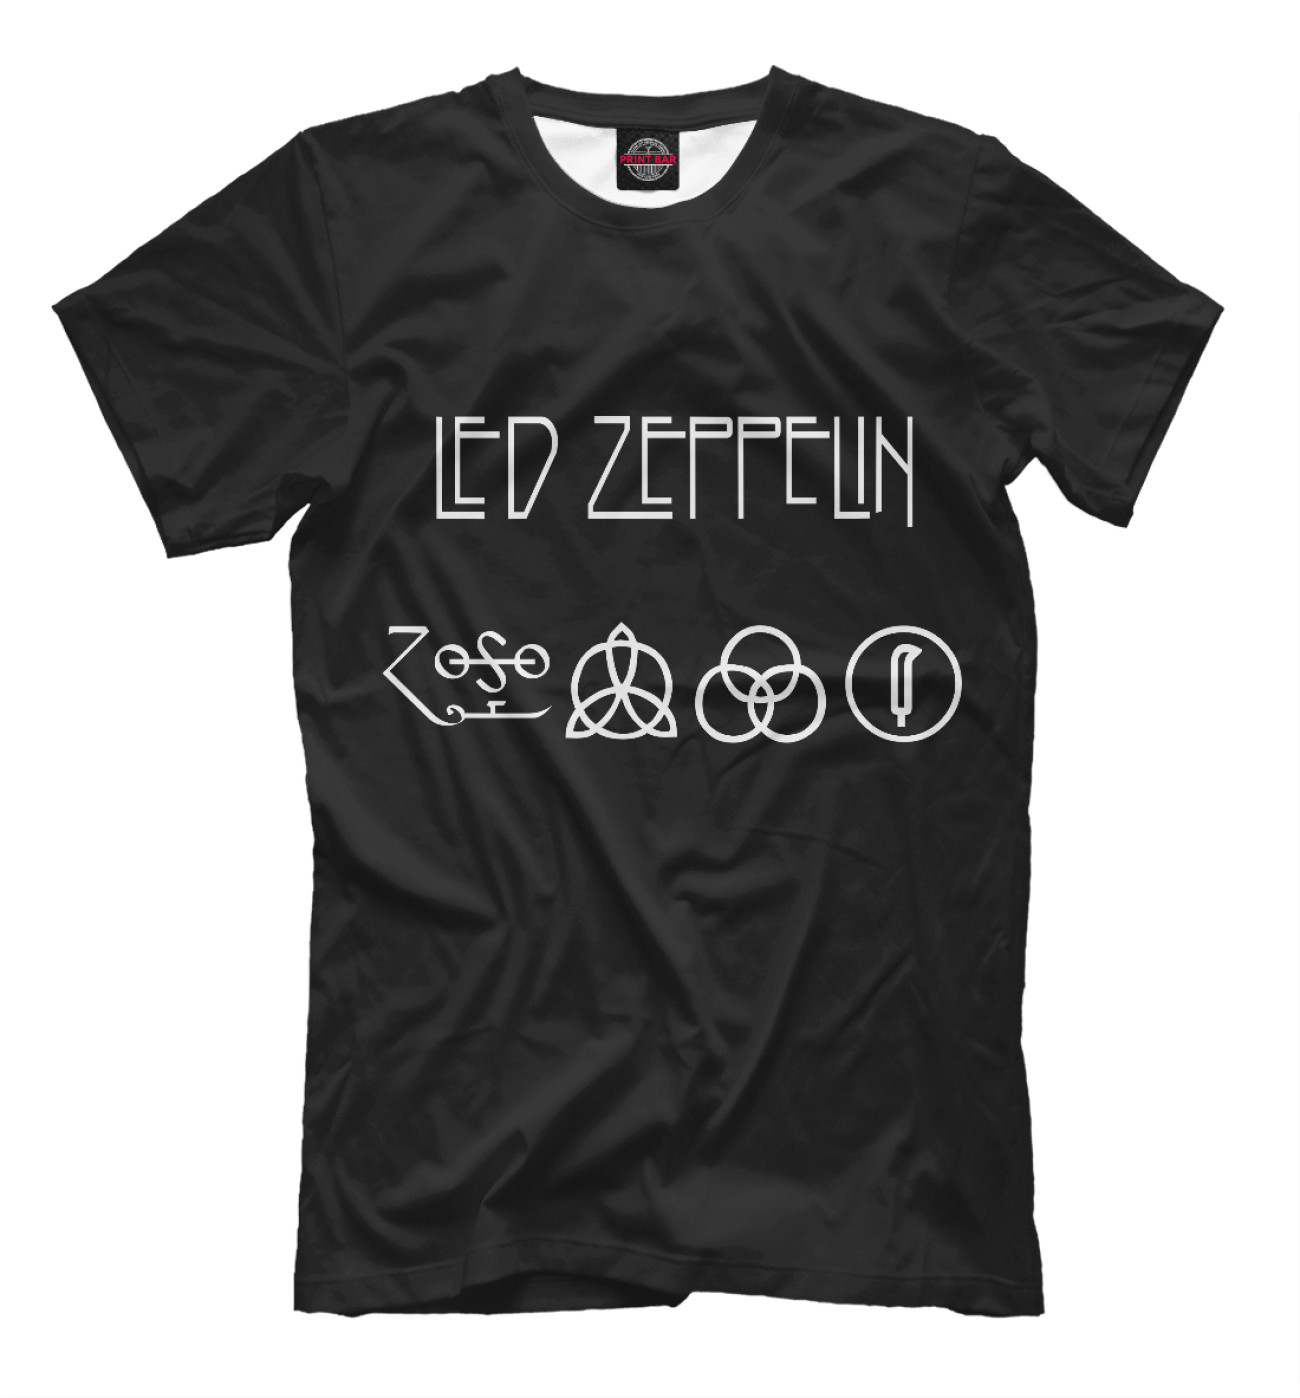 Мужская Футболка Led Zeppelin, артикул: MZK-372752-fut-2